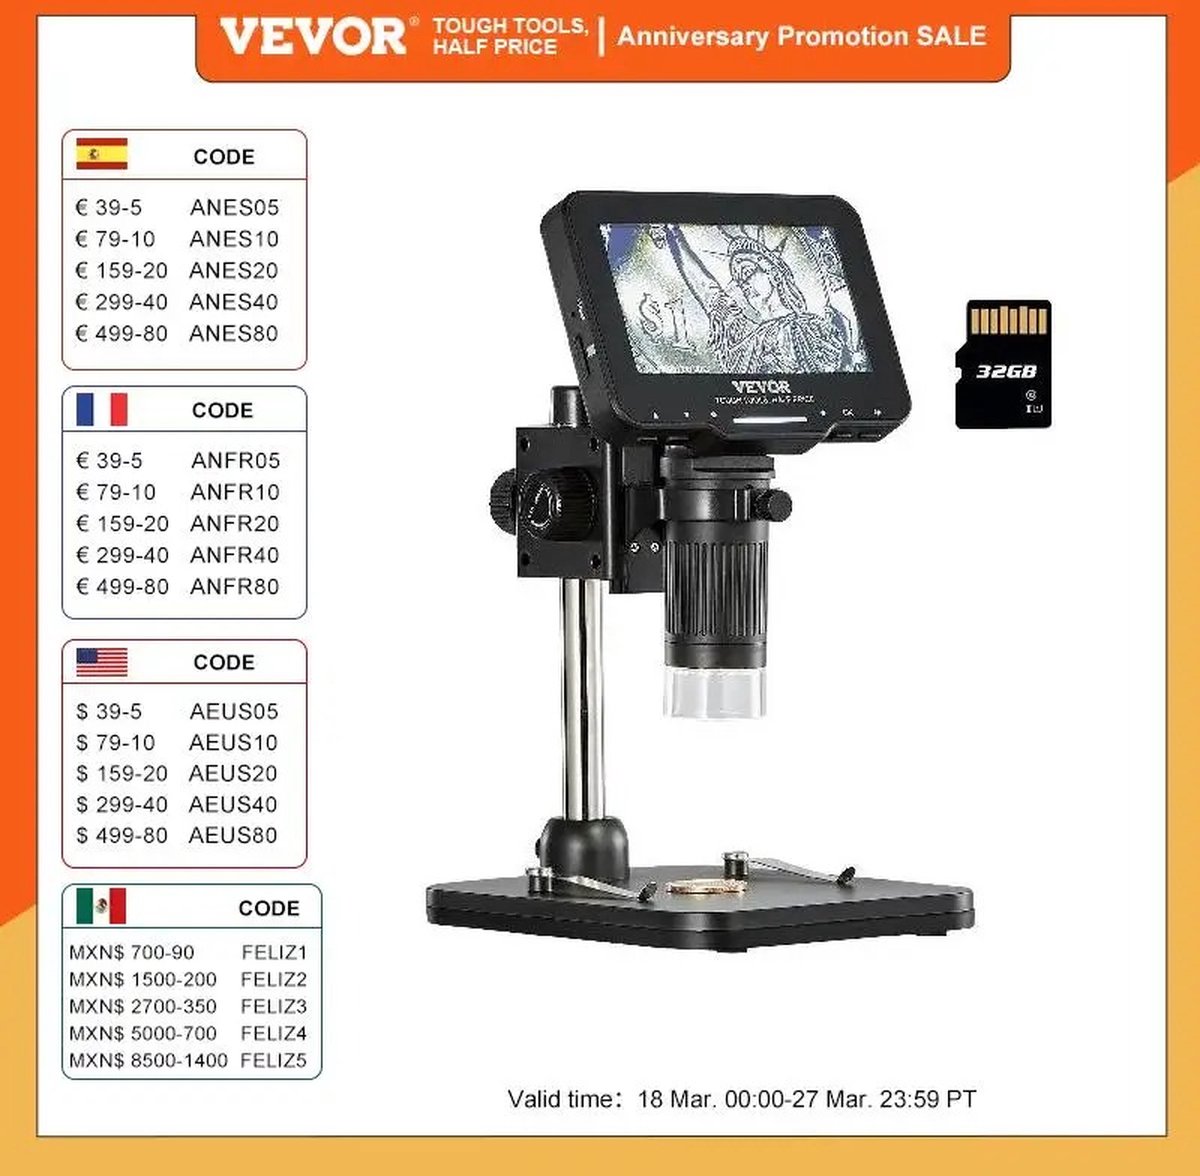 KOSMOS - VEVOR High Definition Video Microscoop LP043/W10 - Vergroting 50X-1000X/10X-1300X - 500X-1500X - Camera met 2 Miljoen Pixels - Focusing Range 0-50mm - Schermtype 4.3in/10in